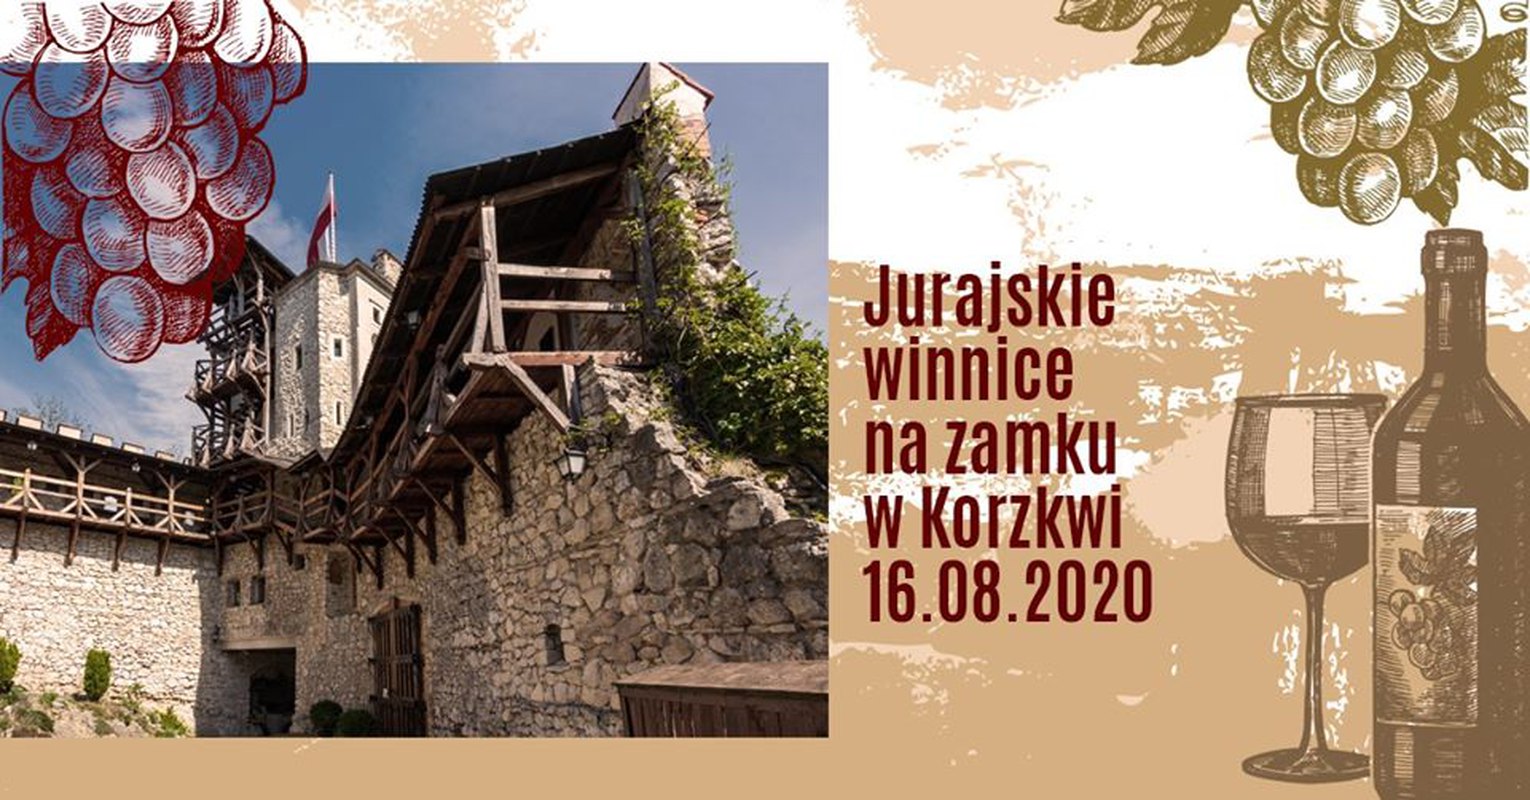 Jurajskie winnice na zamku w Korzkwi